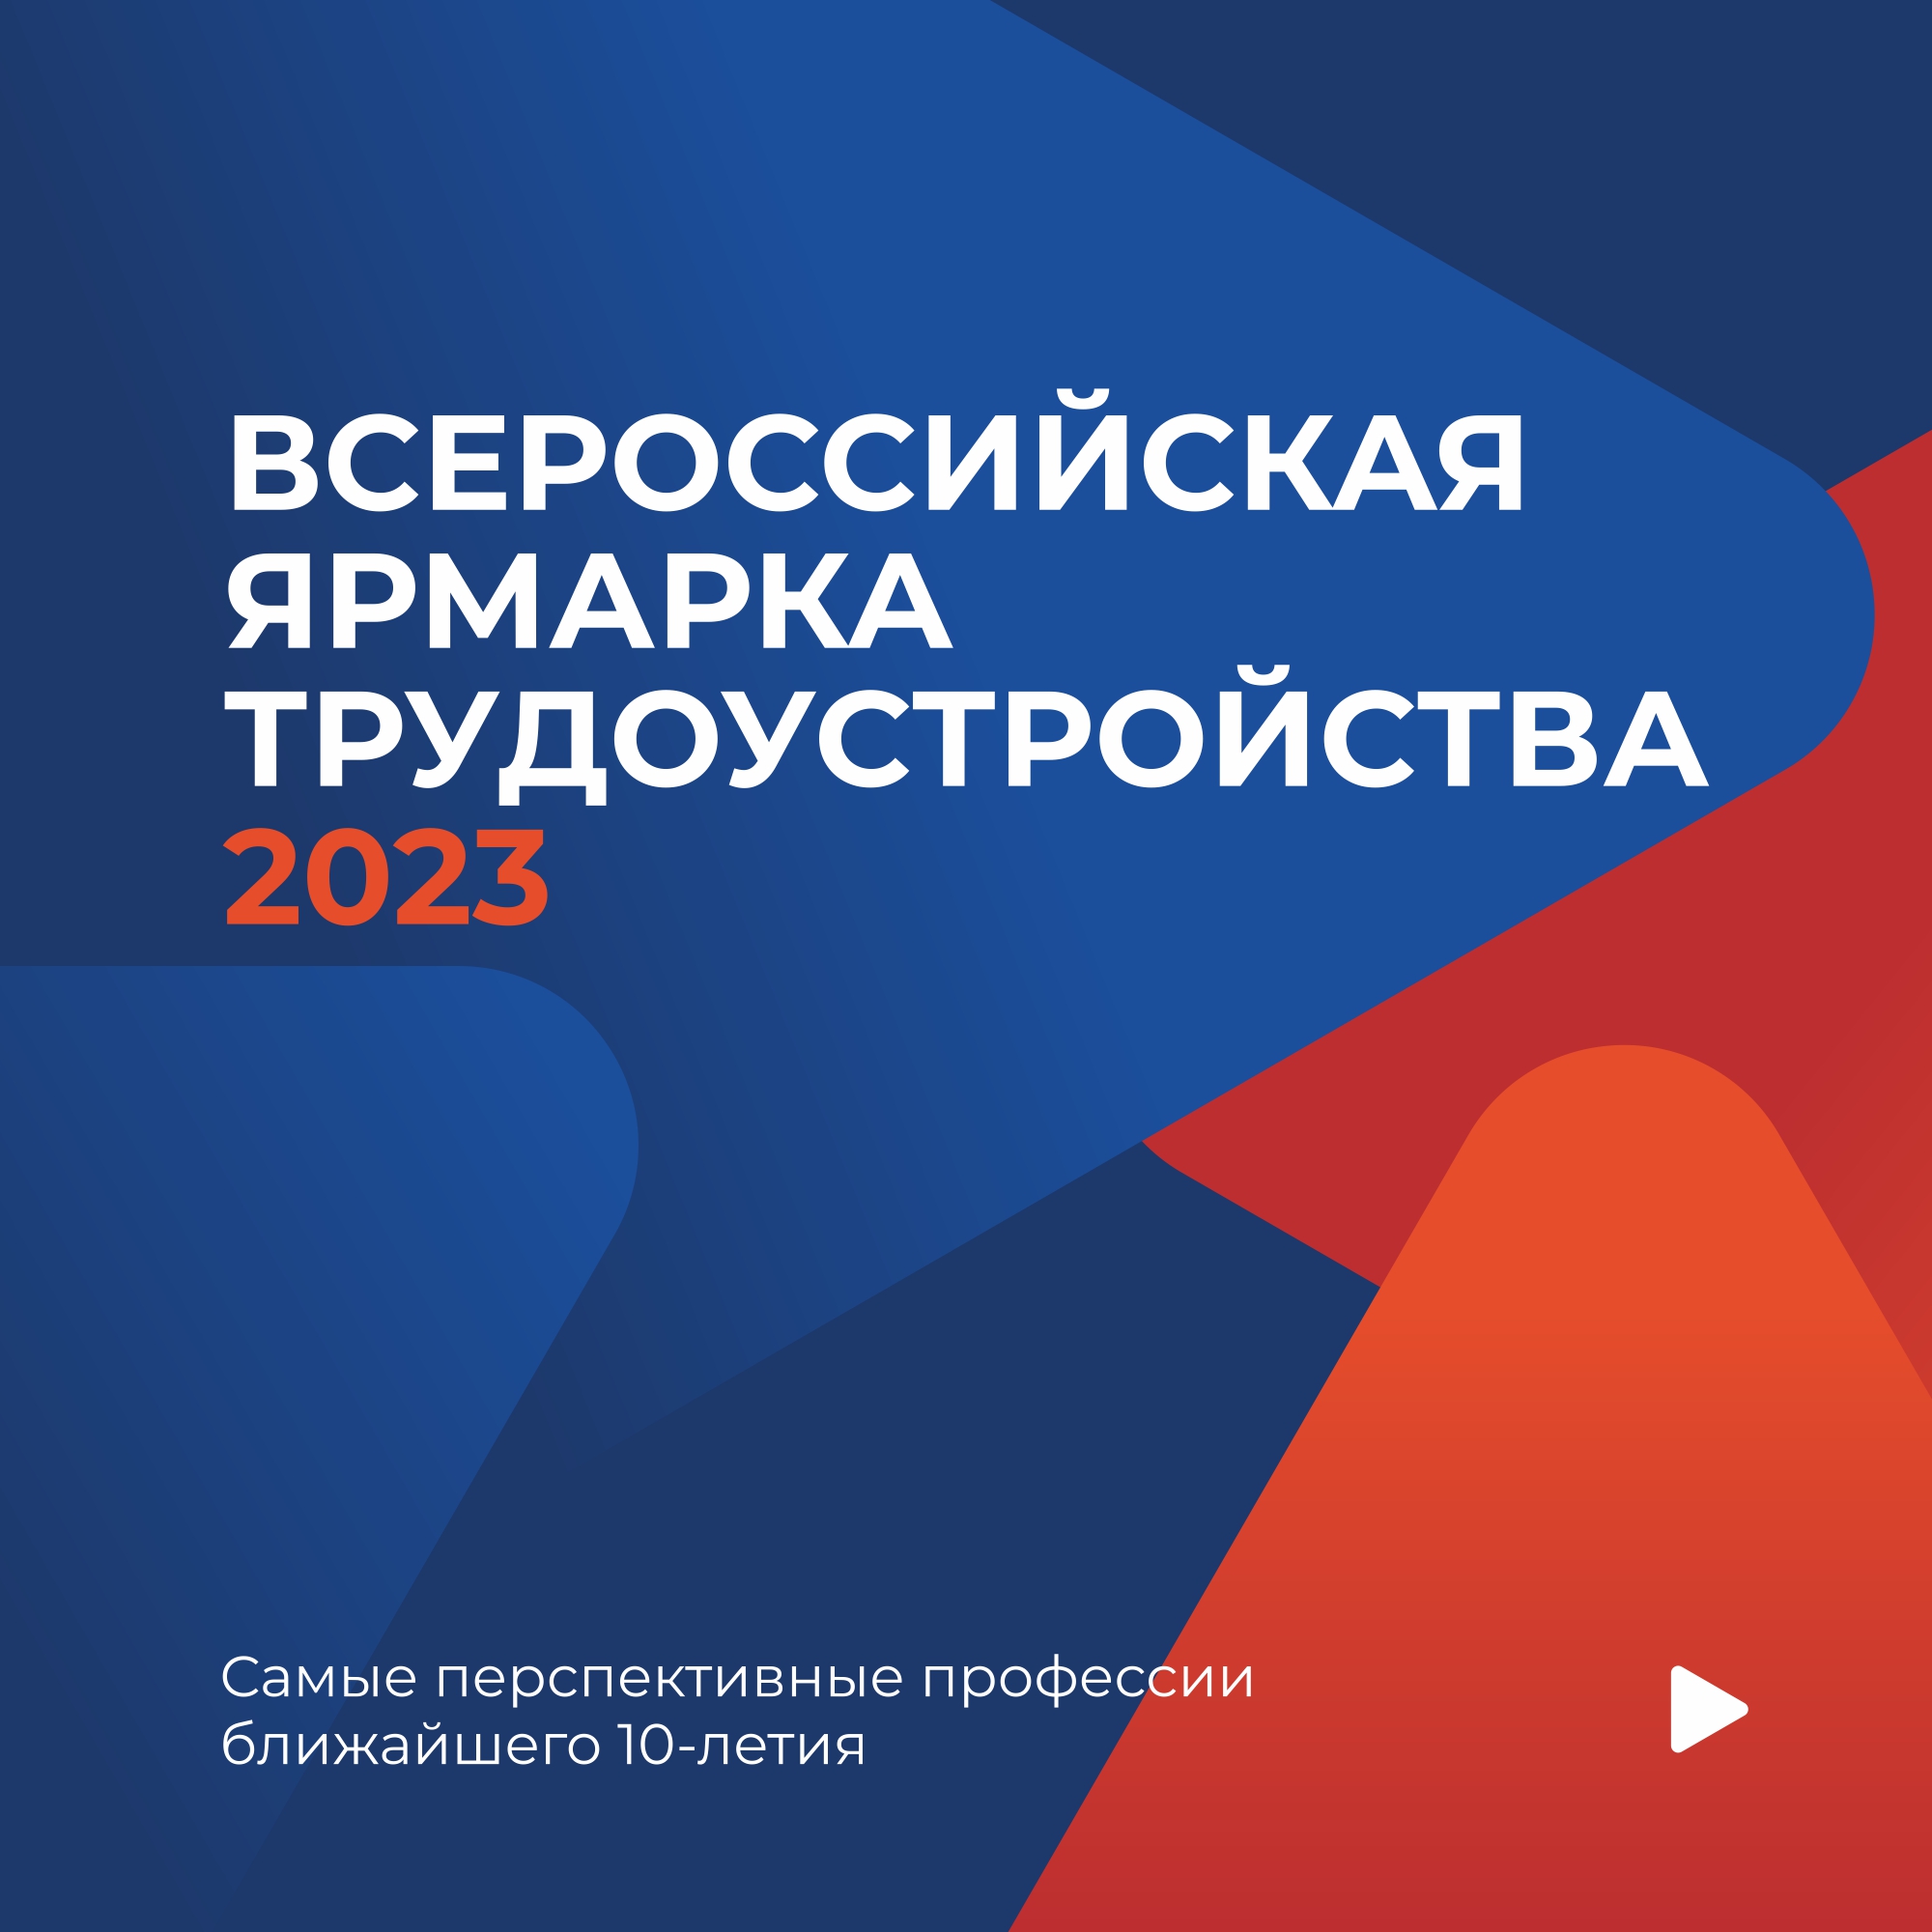 23 июня 2023 года стартует федеральный этап Всероссийской ярмарки трудоустройства "Работа России. Время возможностей"